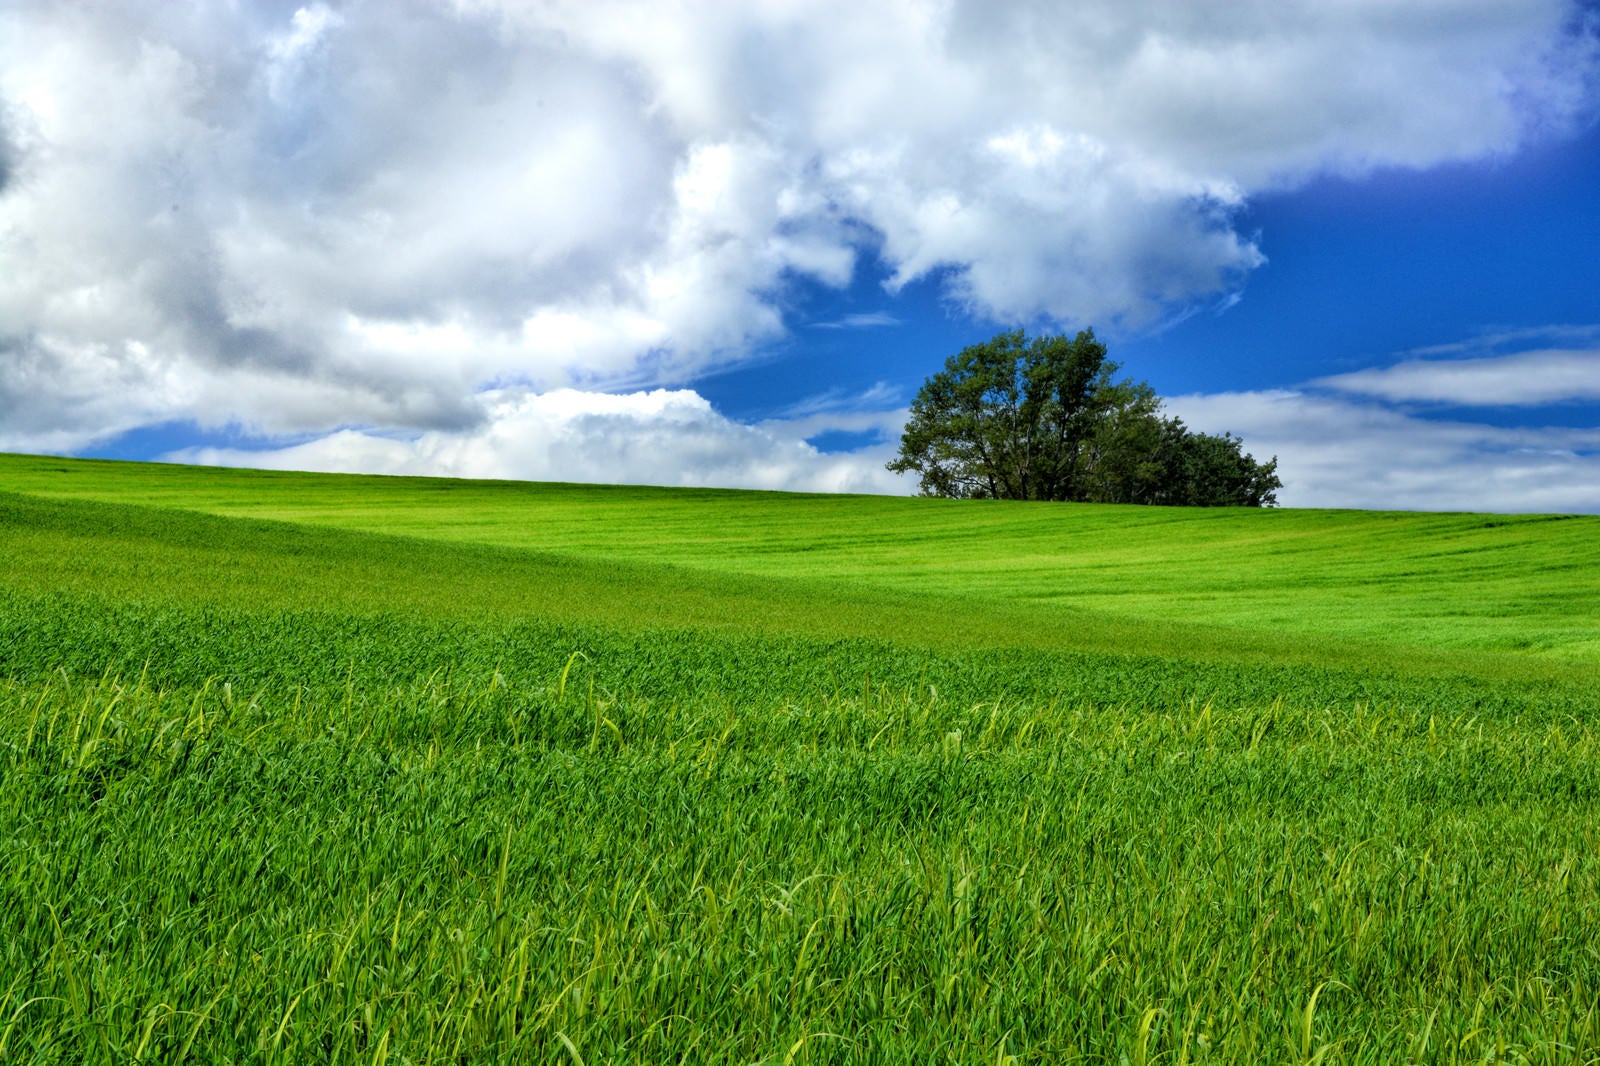 「北海道にある大草原の風景」の写真